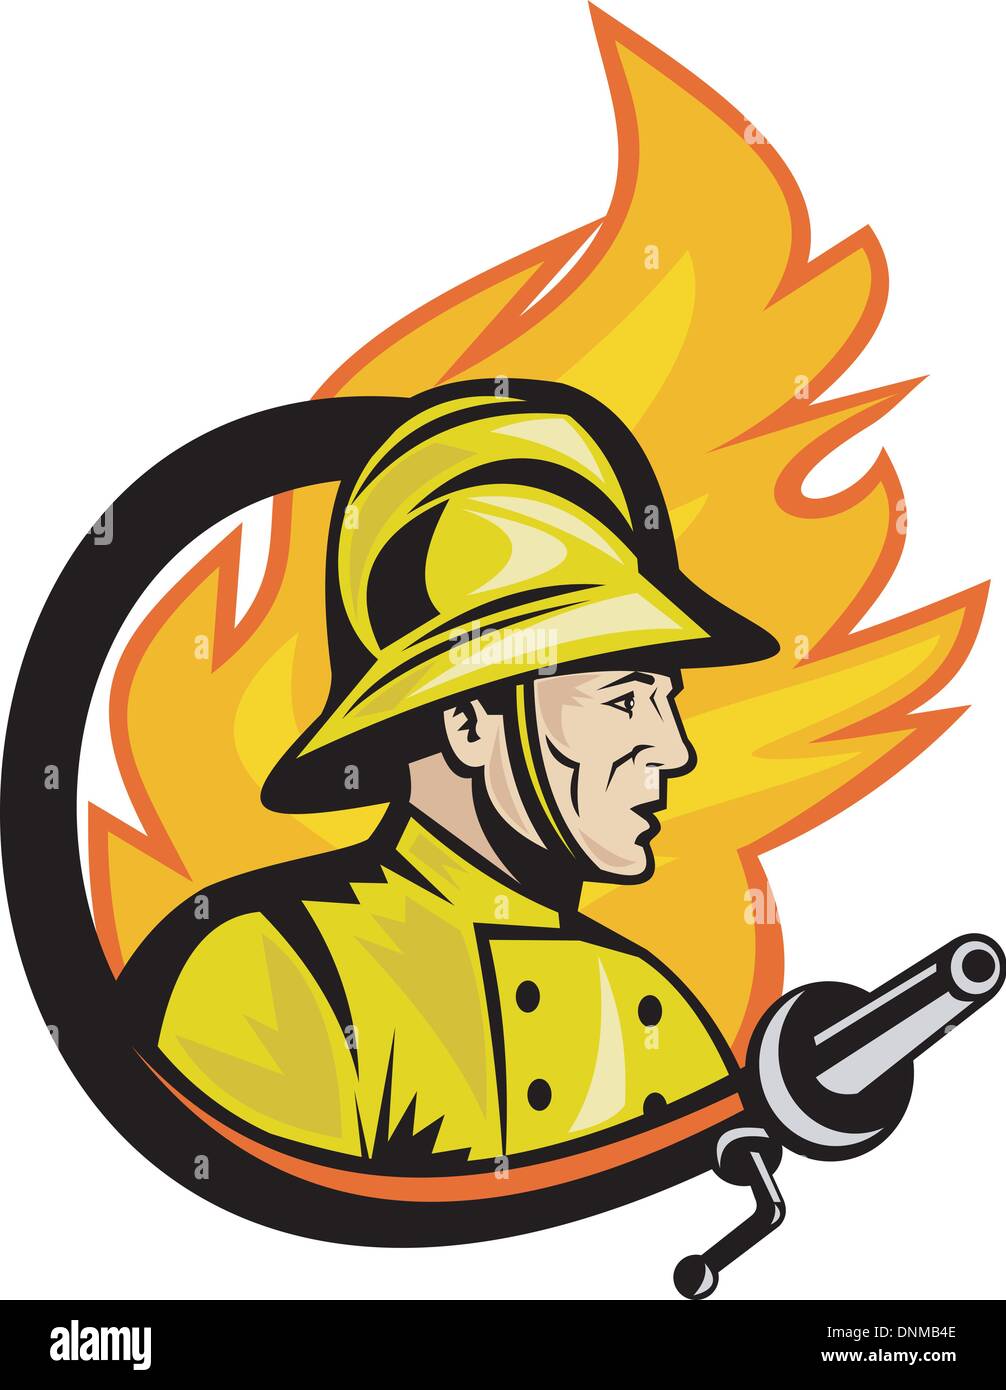 Illustration von Feuerwehrmann oder Feuerwehrmann mit Schlauch Feuer und Feuer im Hintergrund. Stock Vektor